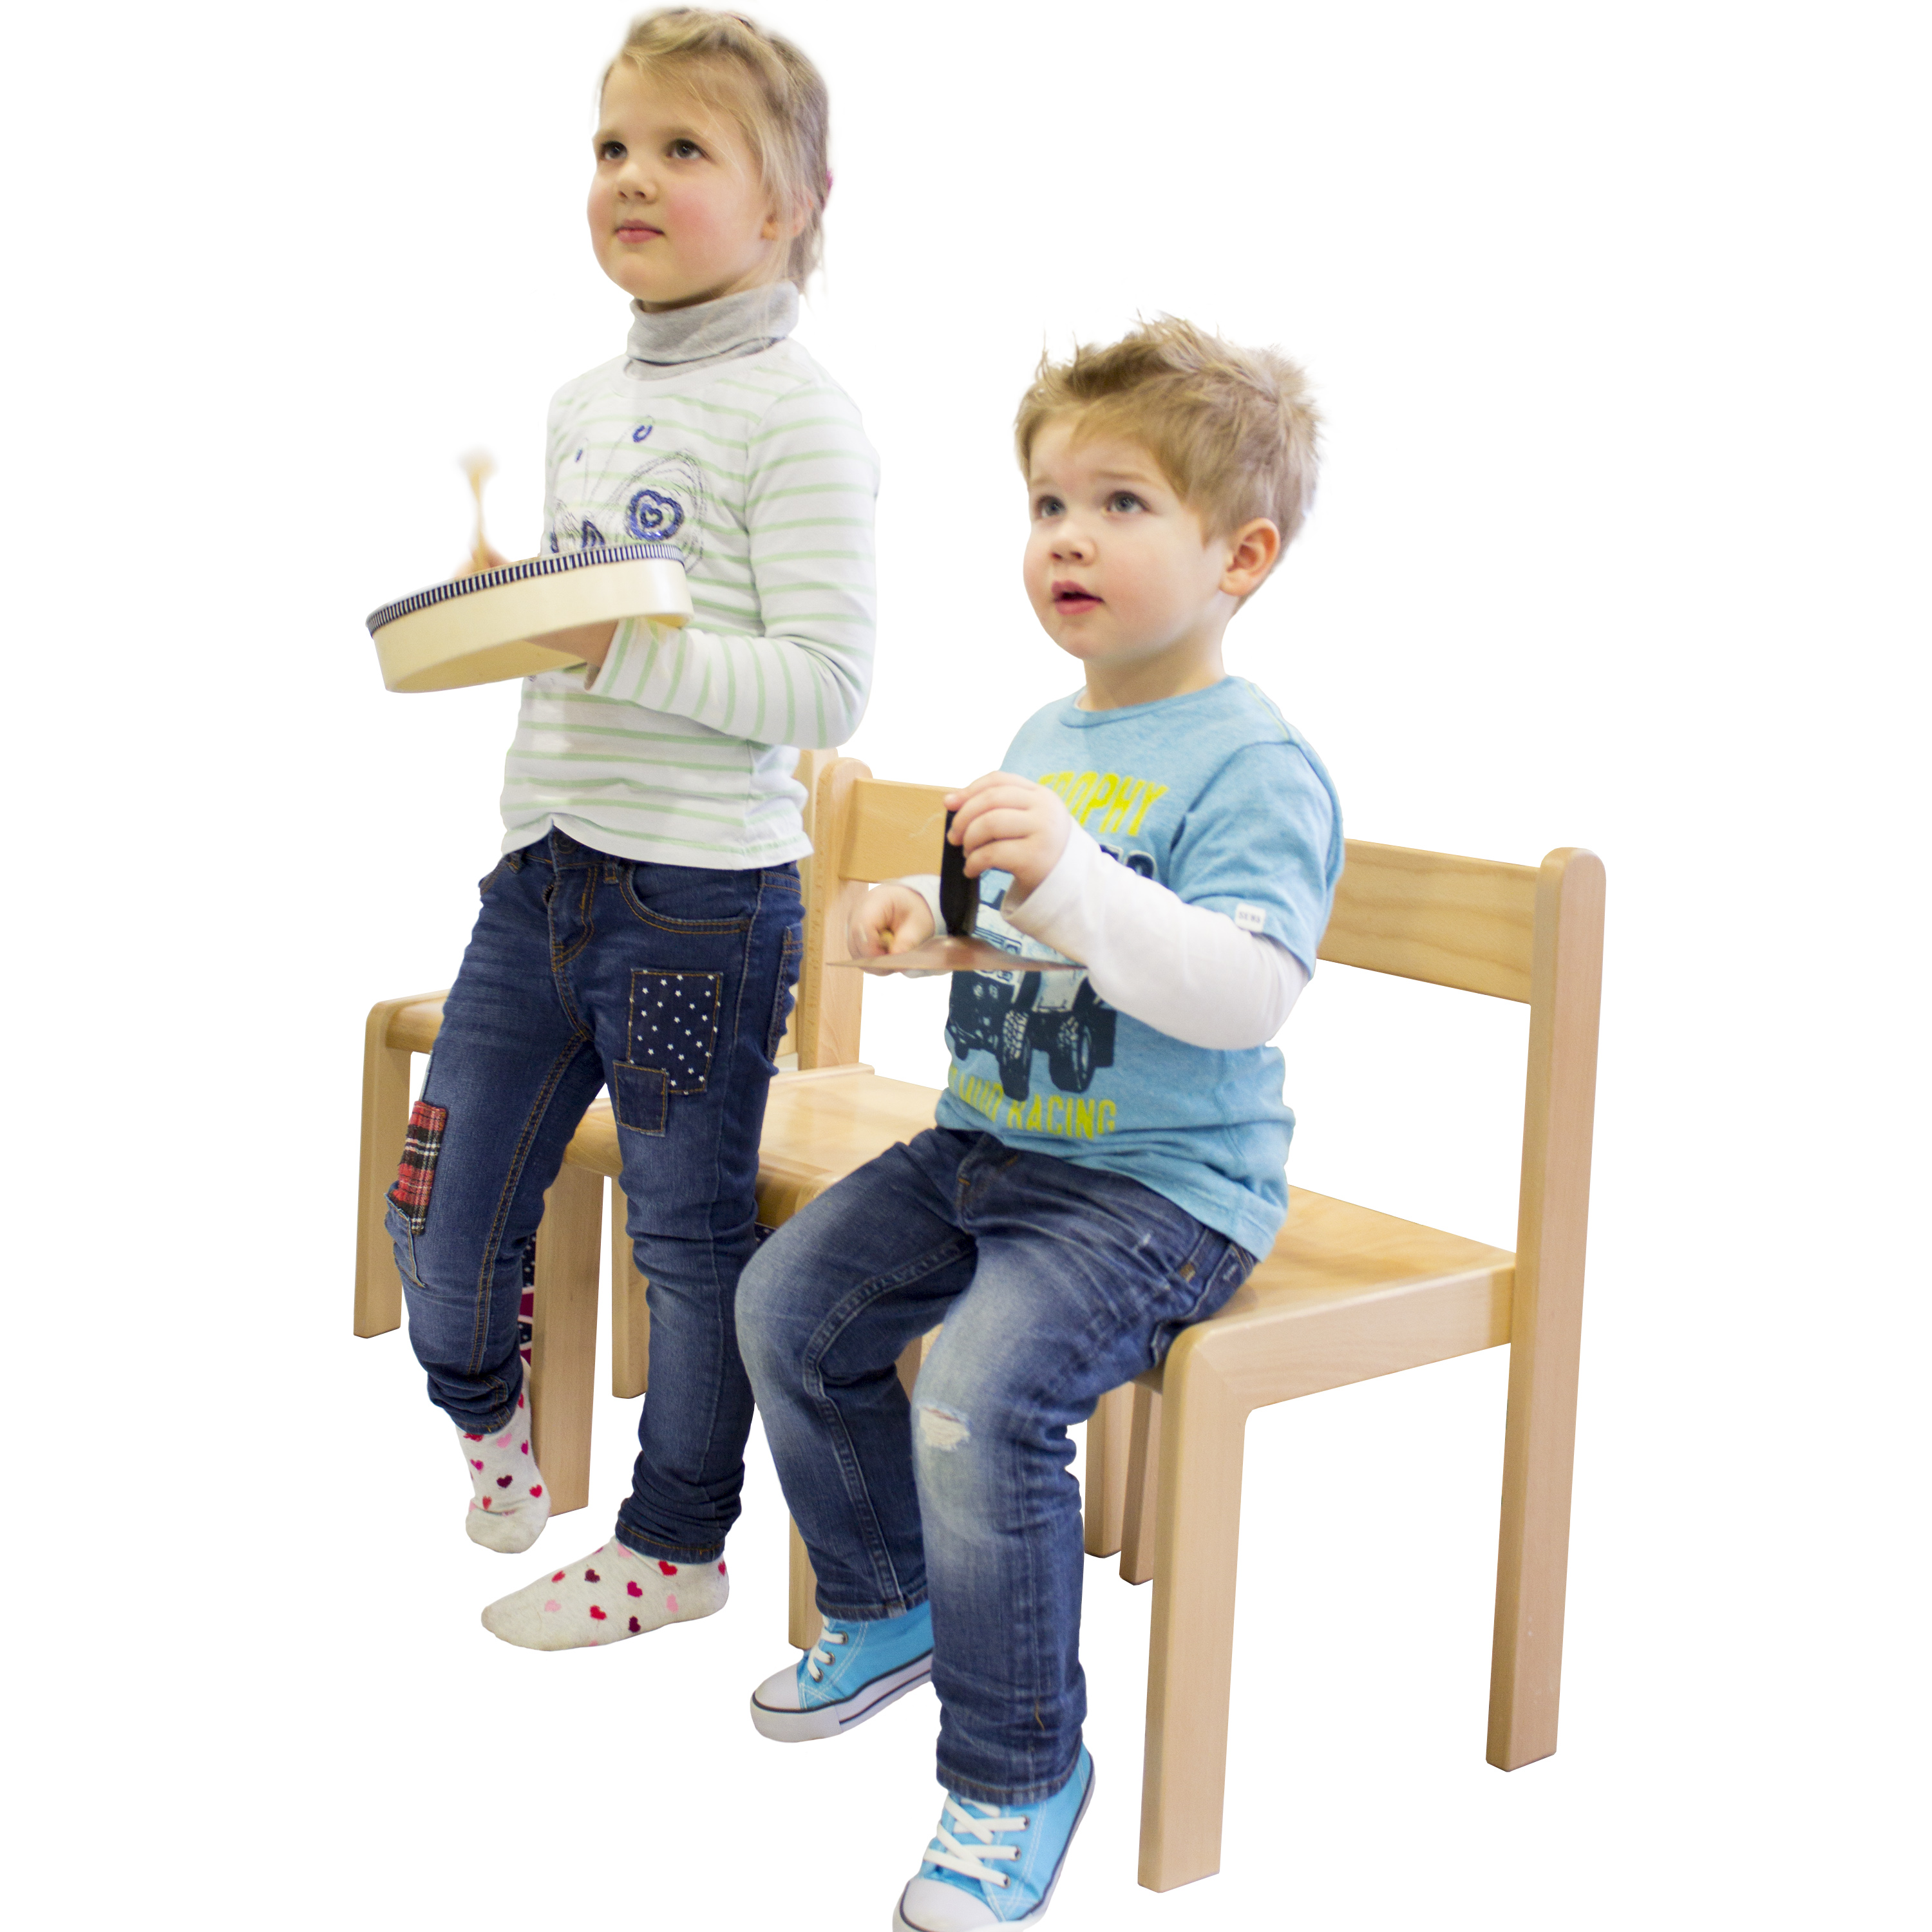 Kindergartenstuhl 'JANNIS', stapelbar, Sitzhöhe 38 cm